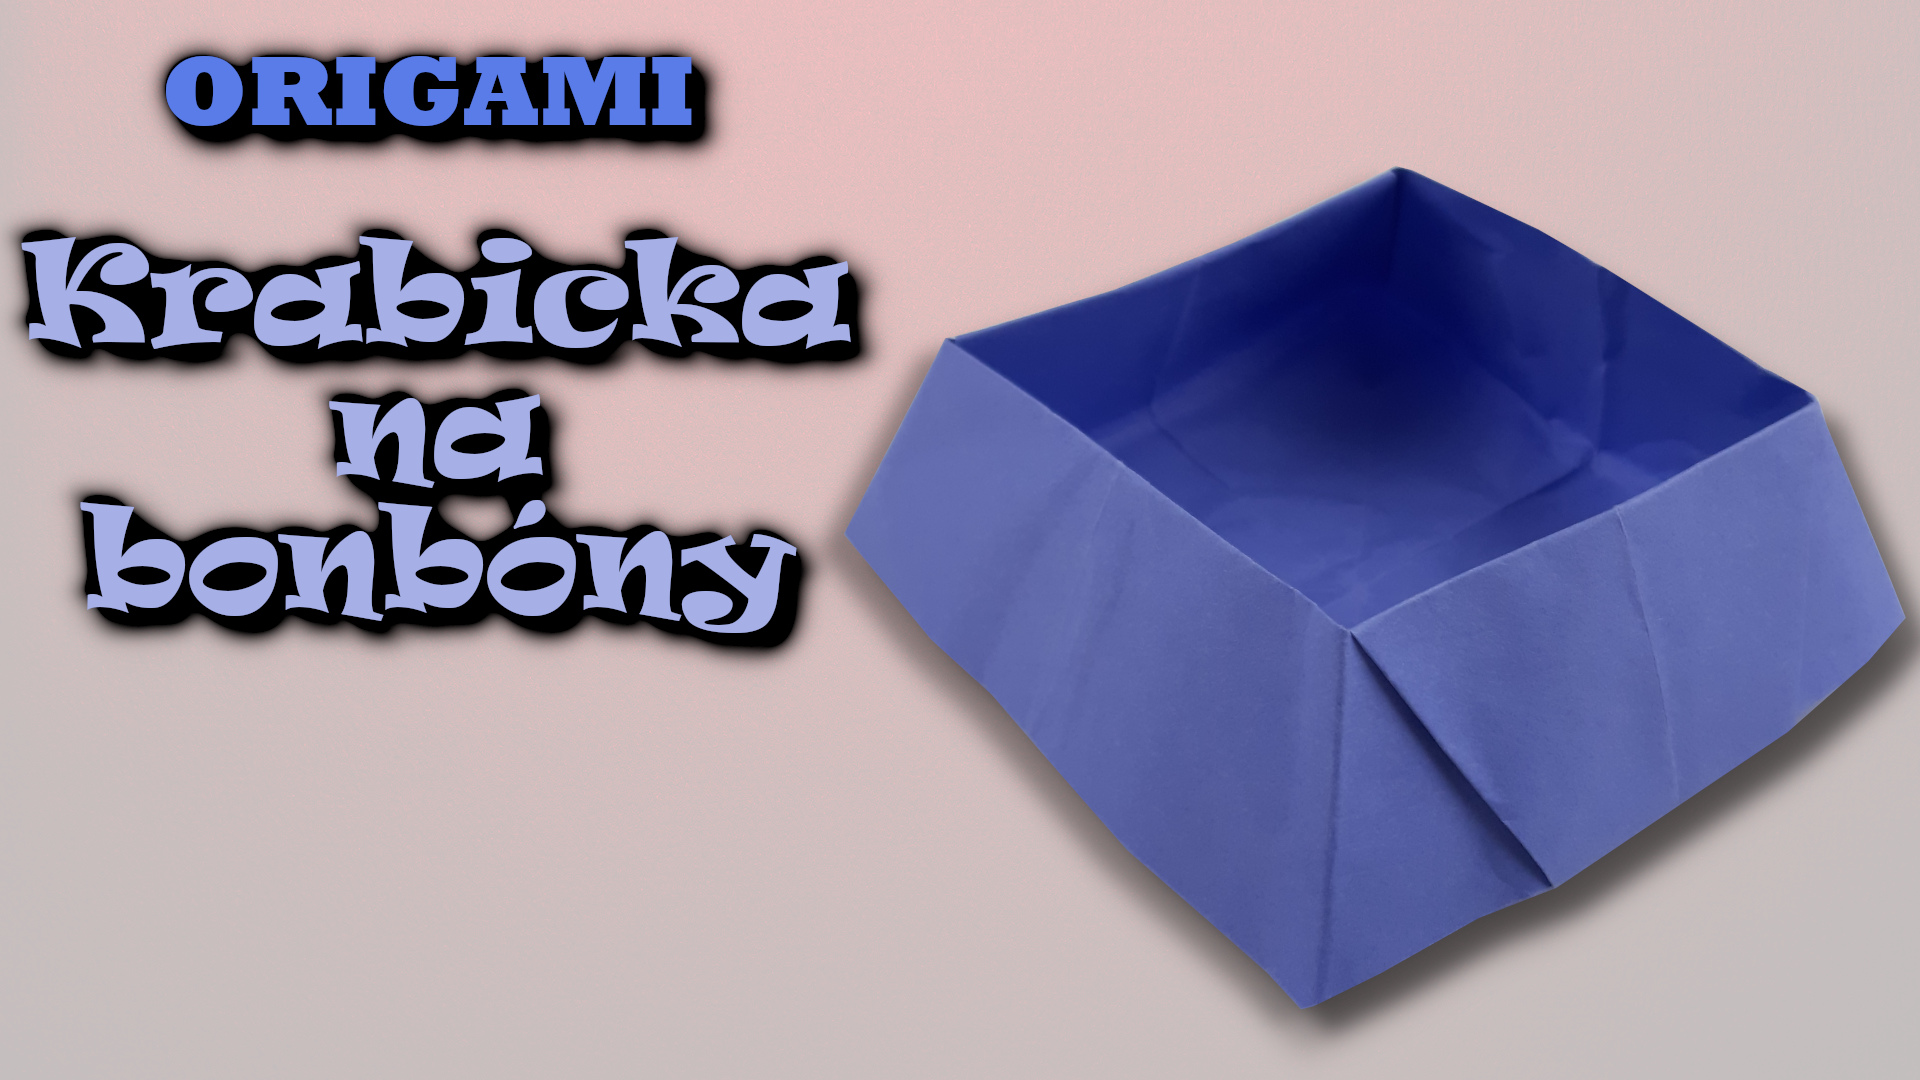 Krabička na bonbóny - jak vyrobit origami krabičku